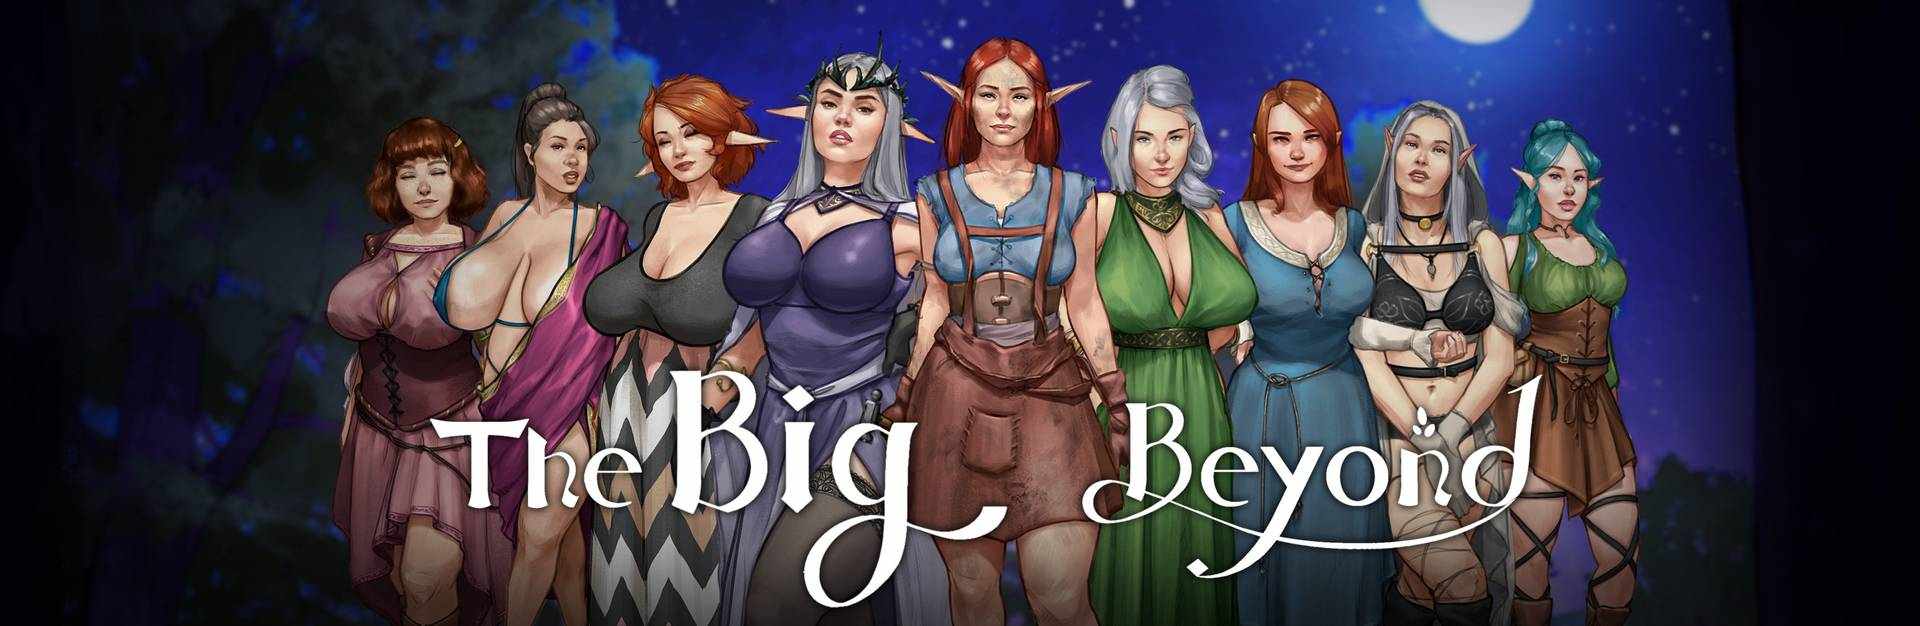 The Big Beyond - Версия 0.03 для публики - 3D-игры, 3D-комиксы, Порно игры...